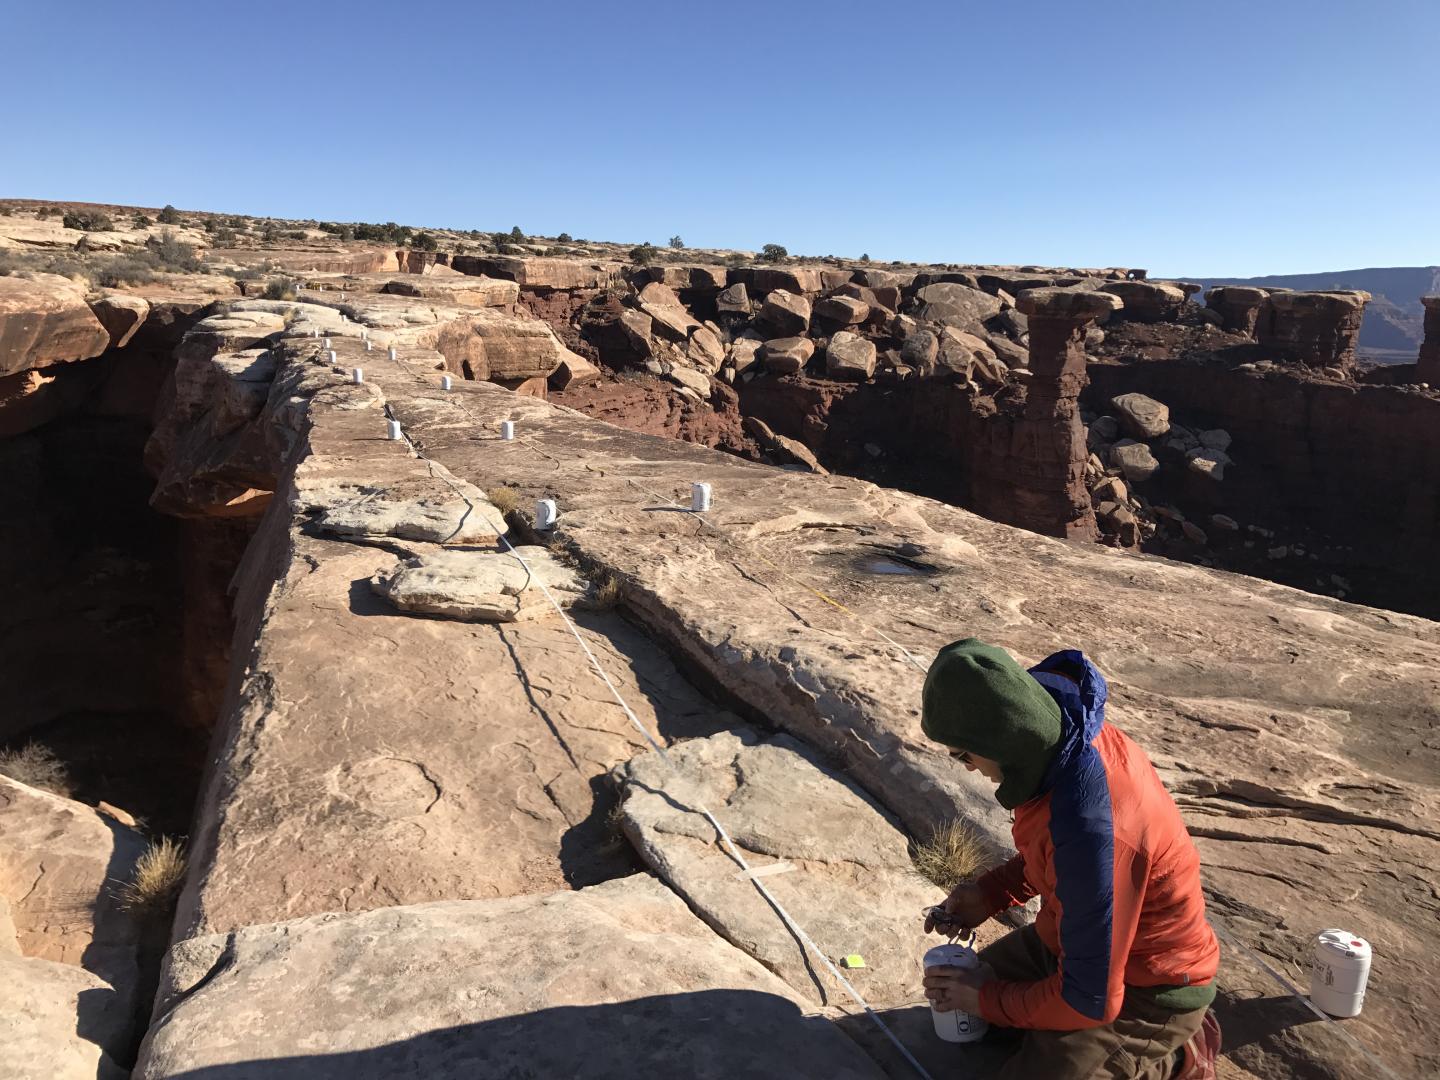 Placing Nodal Seismometers on Utah's Musselman Arch